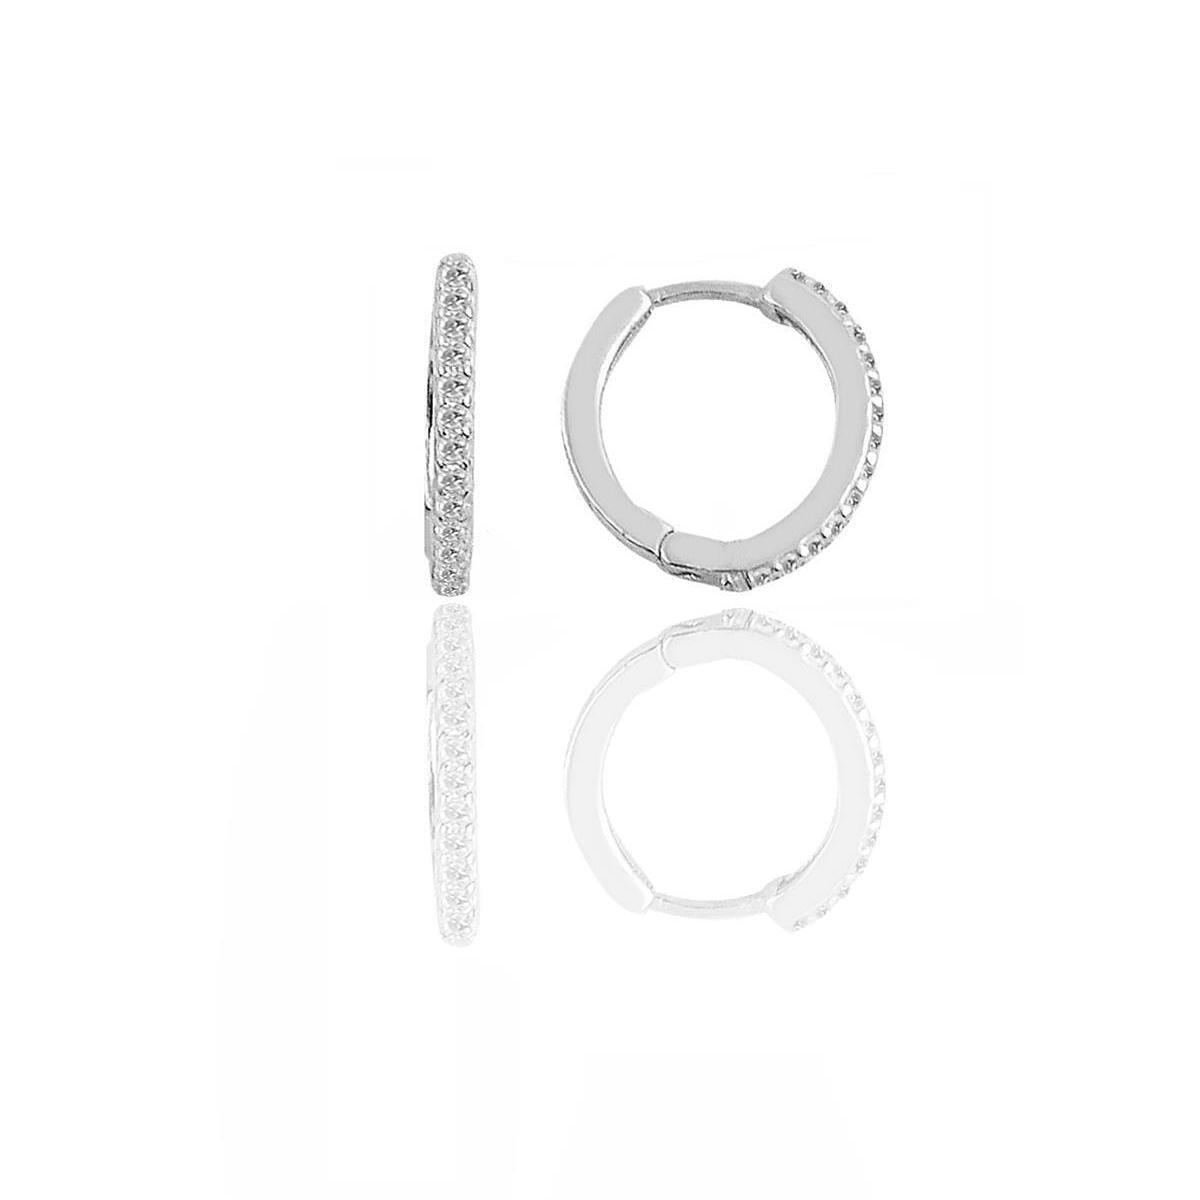 Diamond Earrings For Women • Small Diamond Ring Earrings, Gift For Her - Trending Silver Gifts